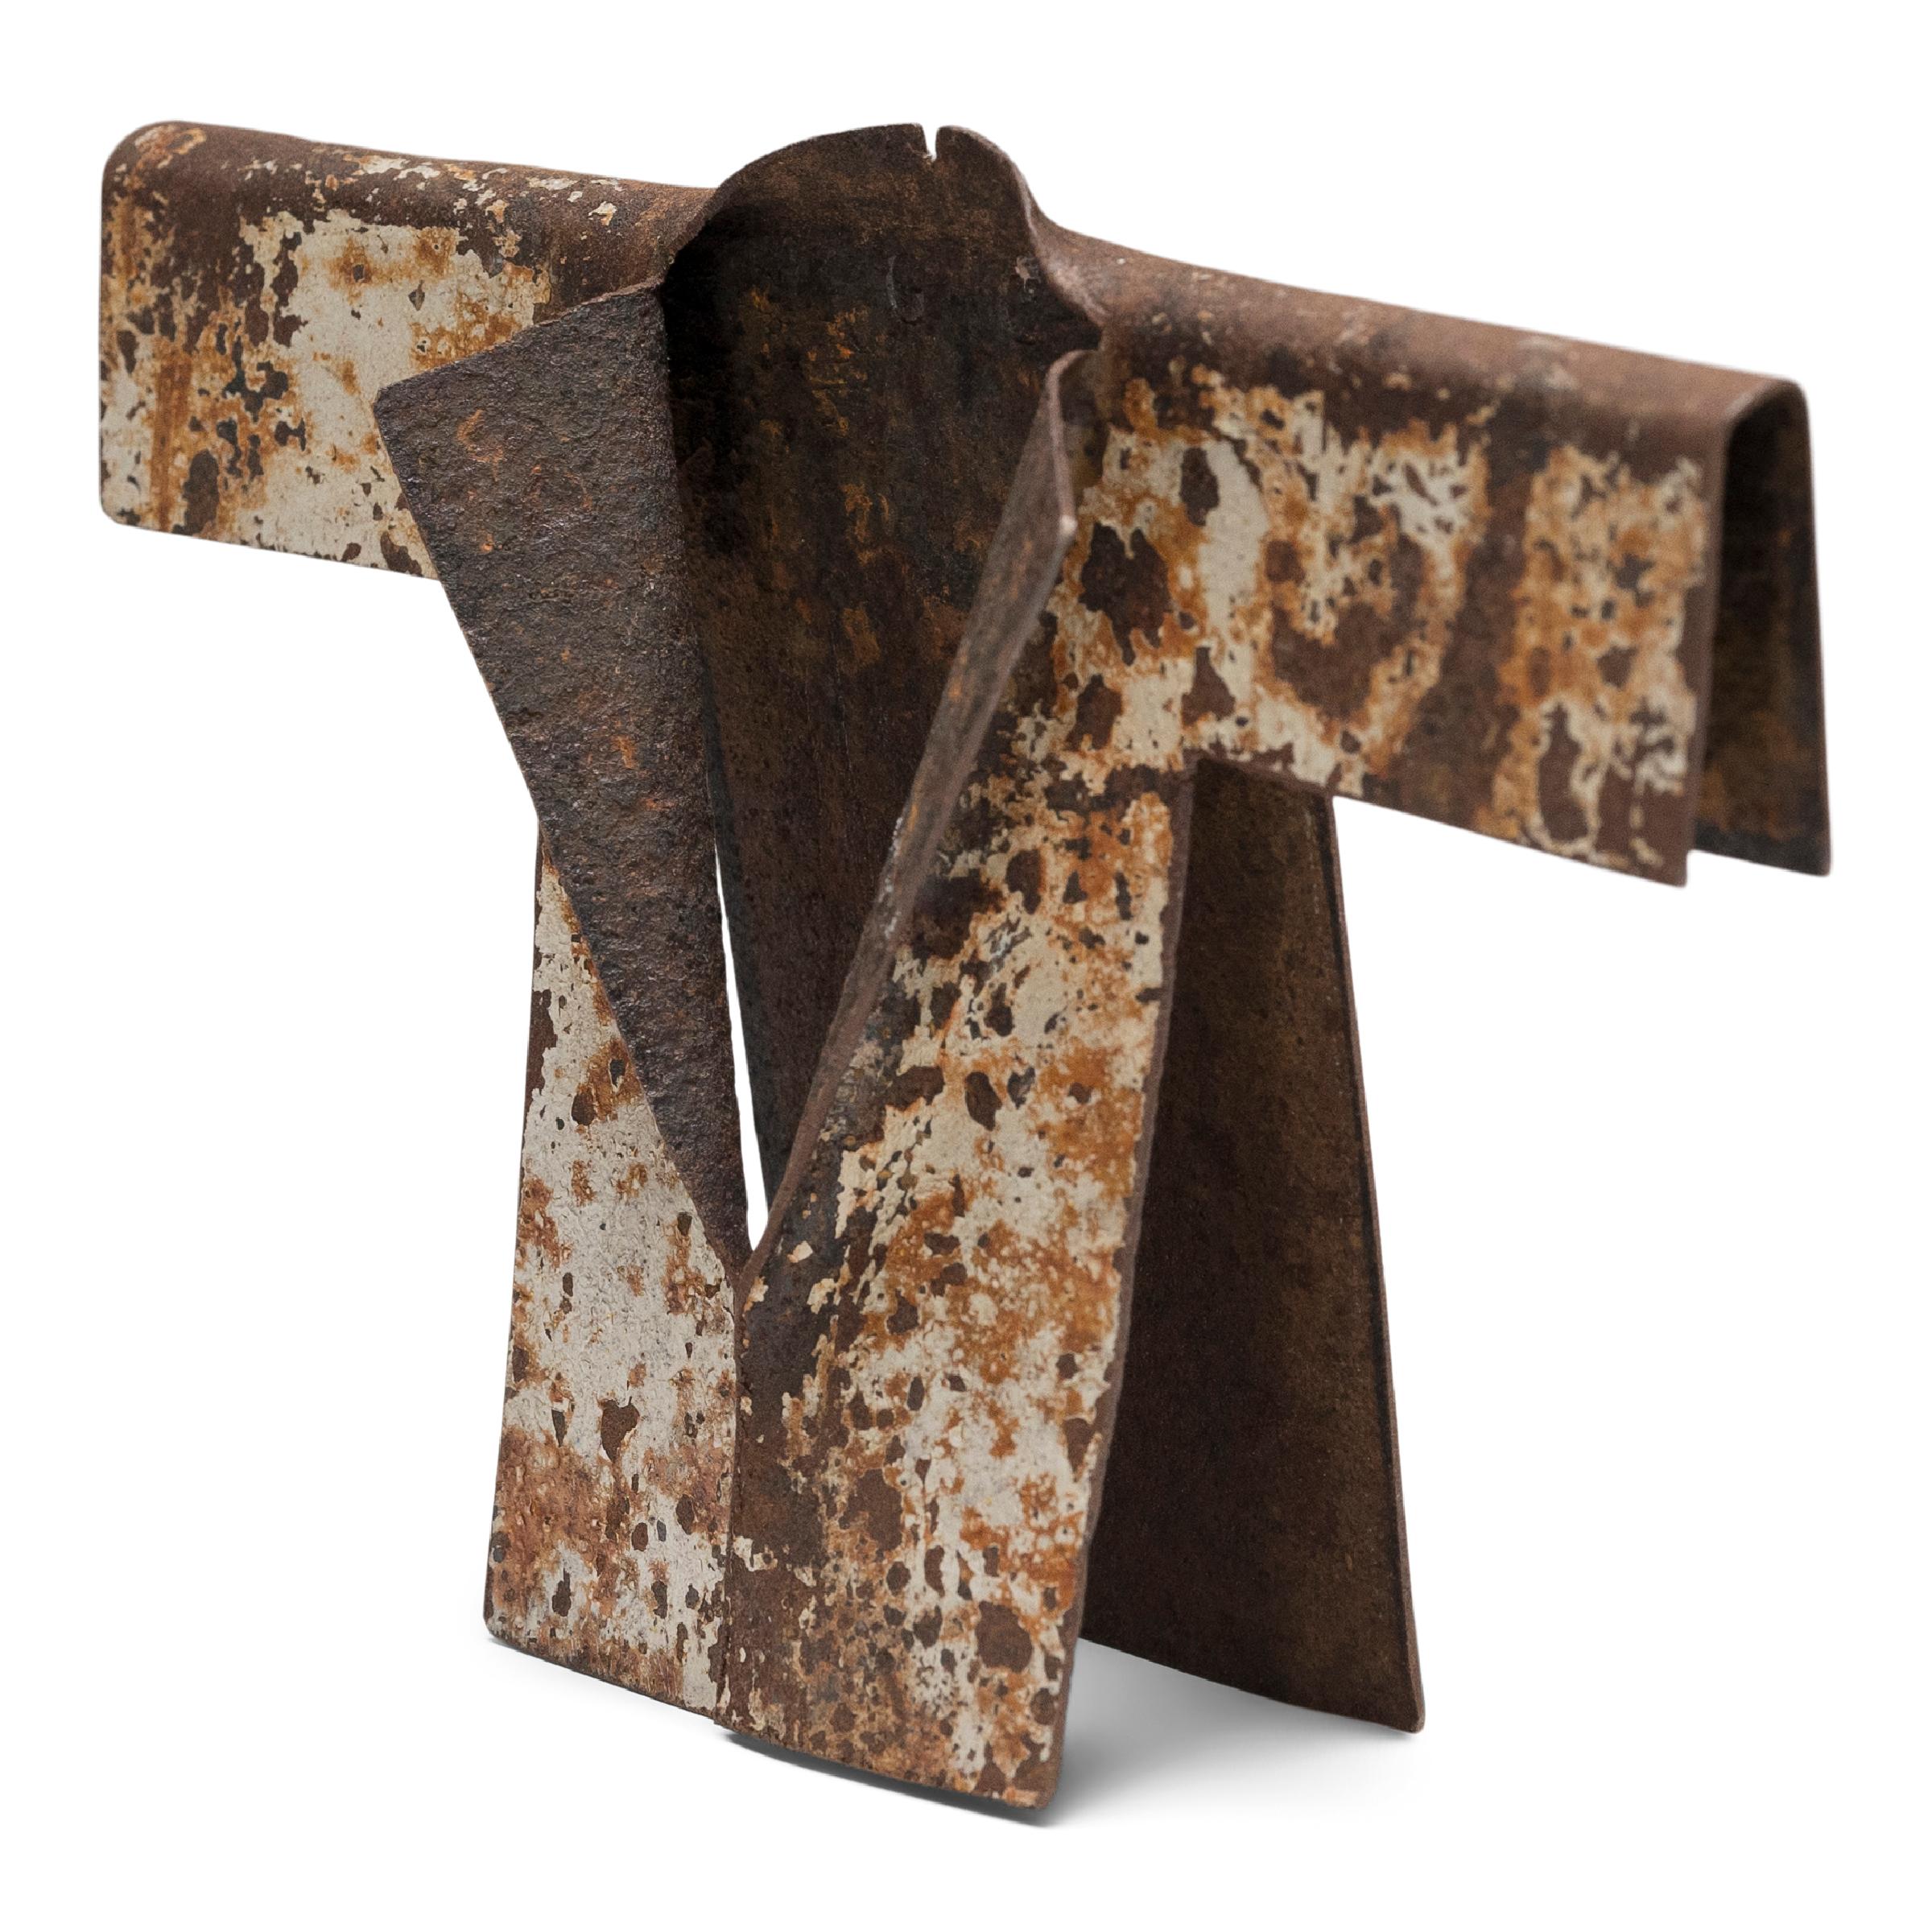 Als der Künstler Gordon Chandler eine verwitterte Stahltrommel entdeckte, die so verzogen war, dass sie dem Ärmel eines Kleidungsstücks ähnelte, wurde er zu einer Serie von Kimono-Skulpturen inspiriert, die aus gefundenen Metallresten geformt